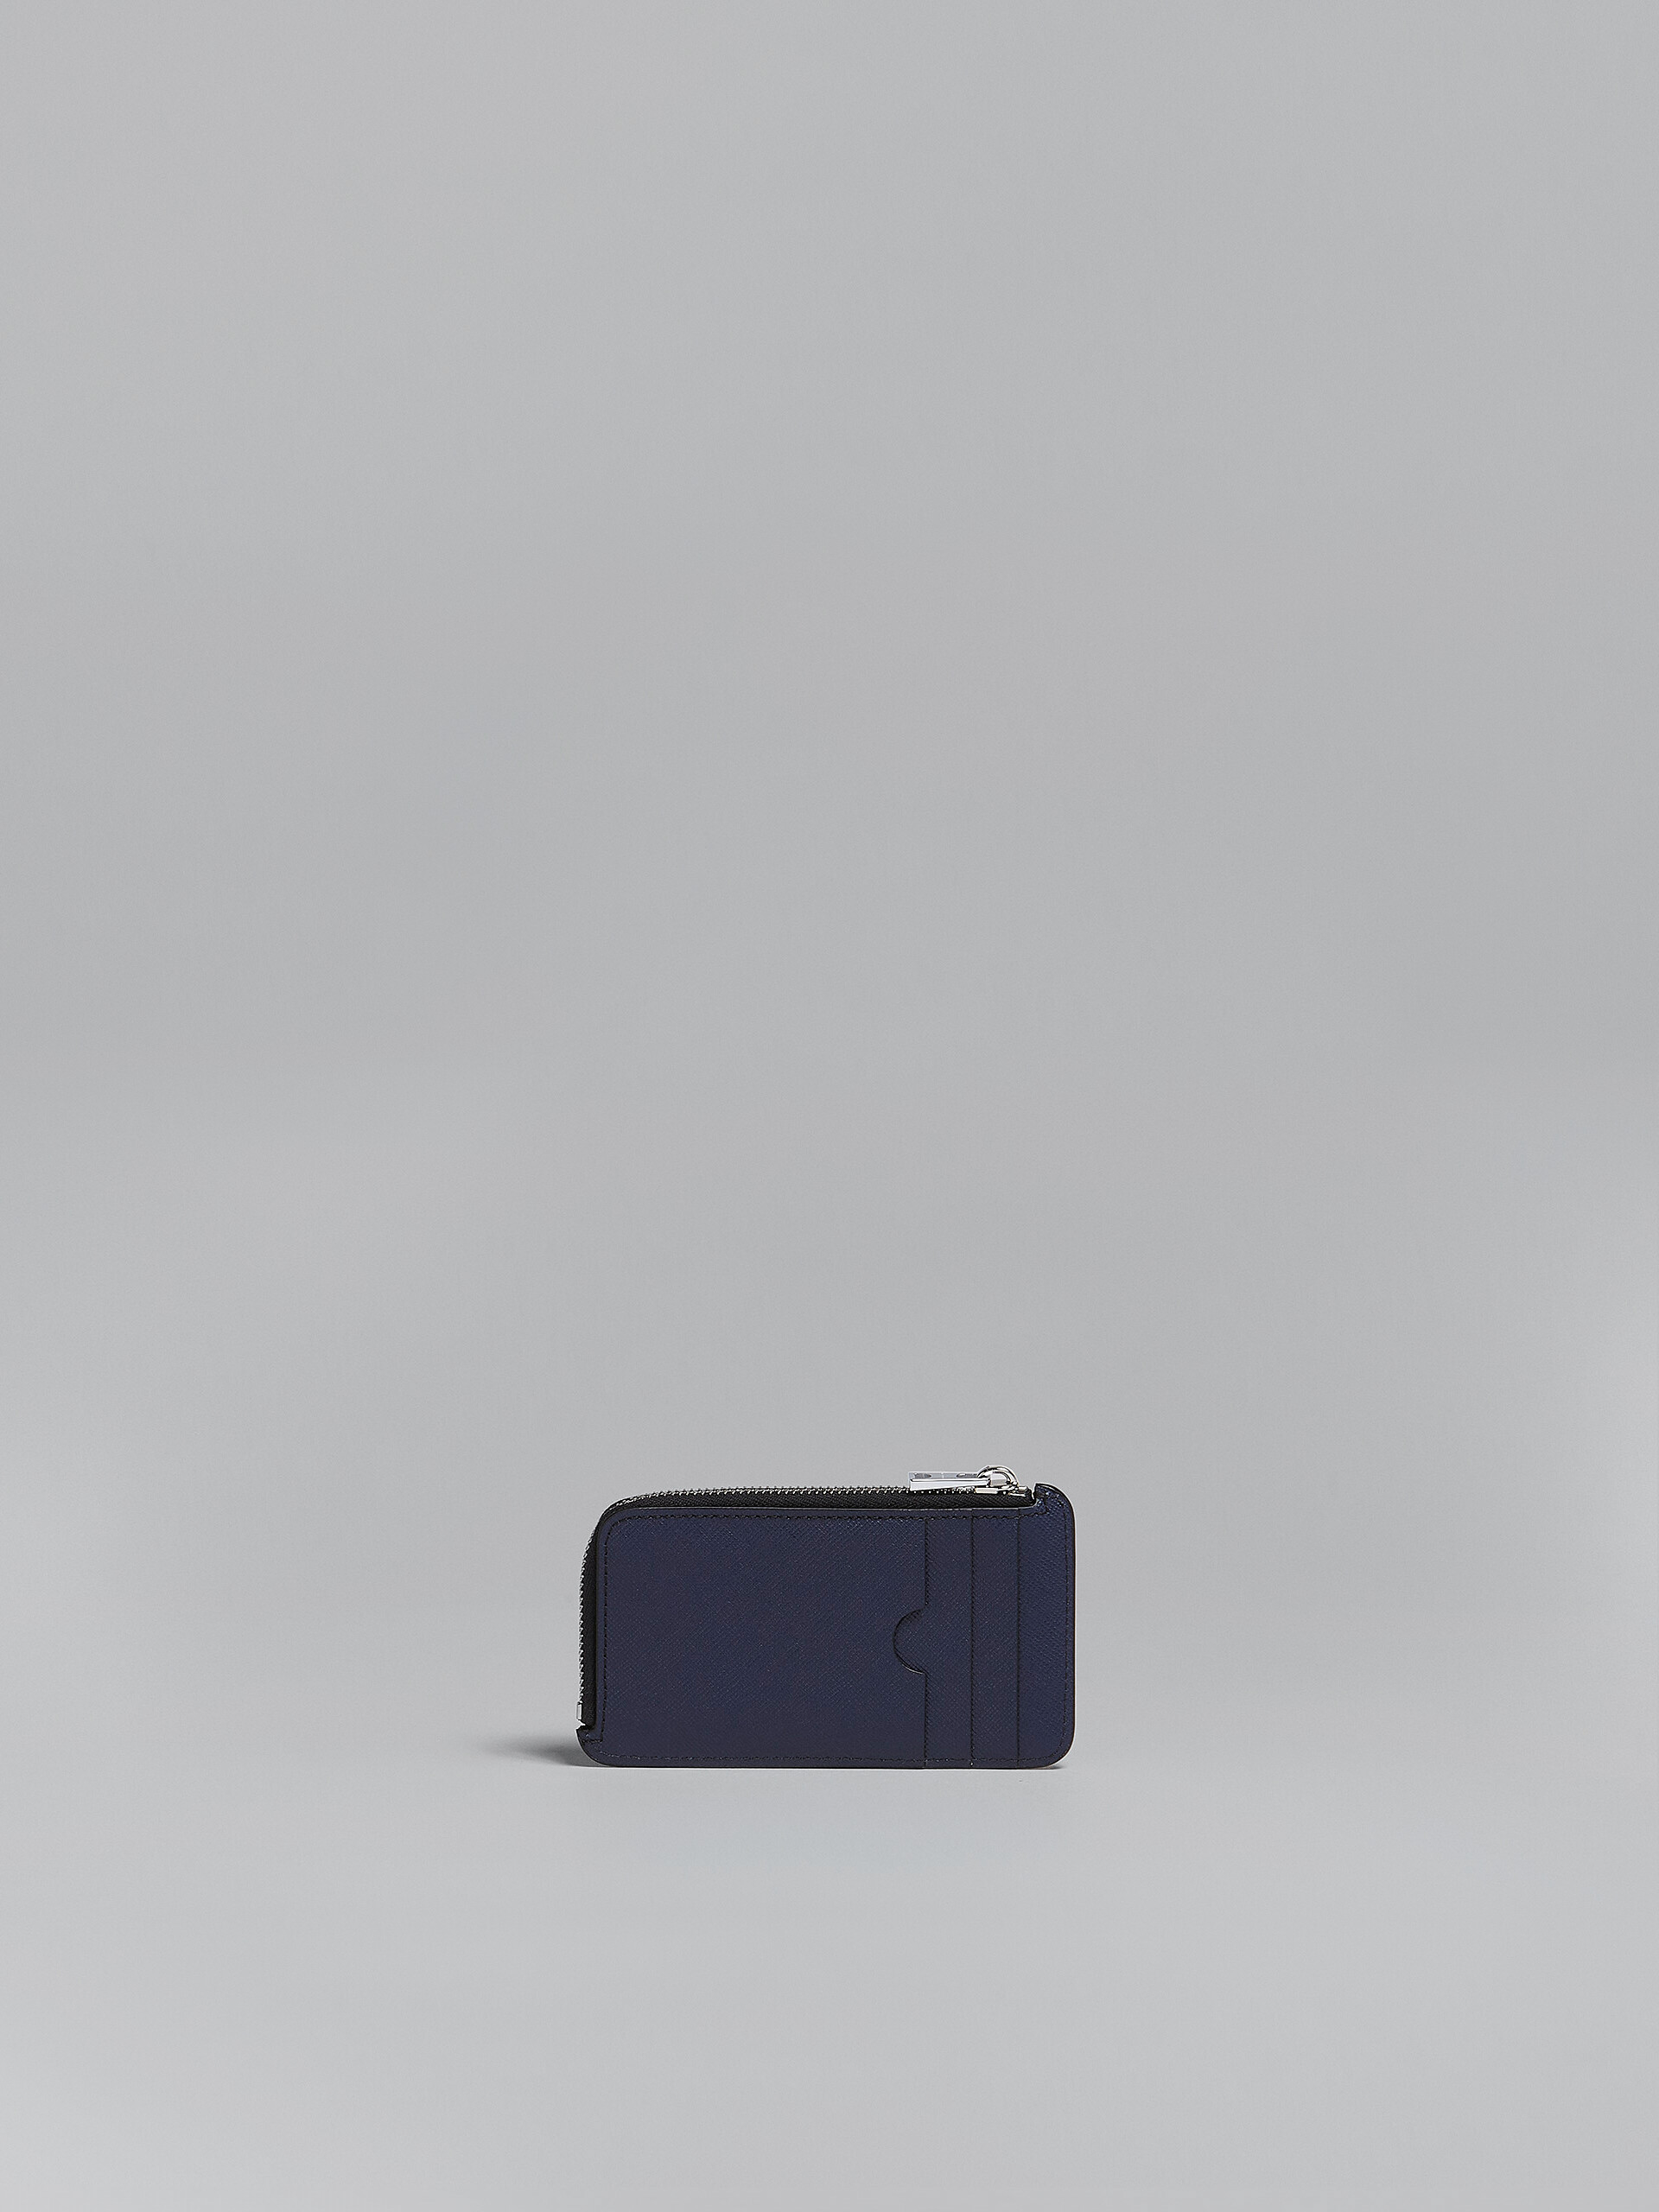 블루 & 블랙 사피아노 가죽 집어라운드 카드 케이스 - 지갑 - Image 3